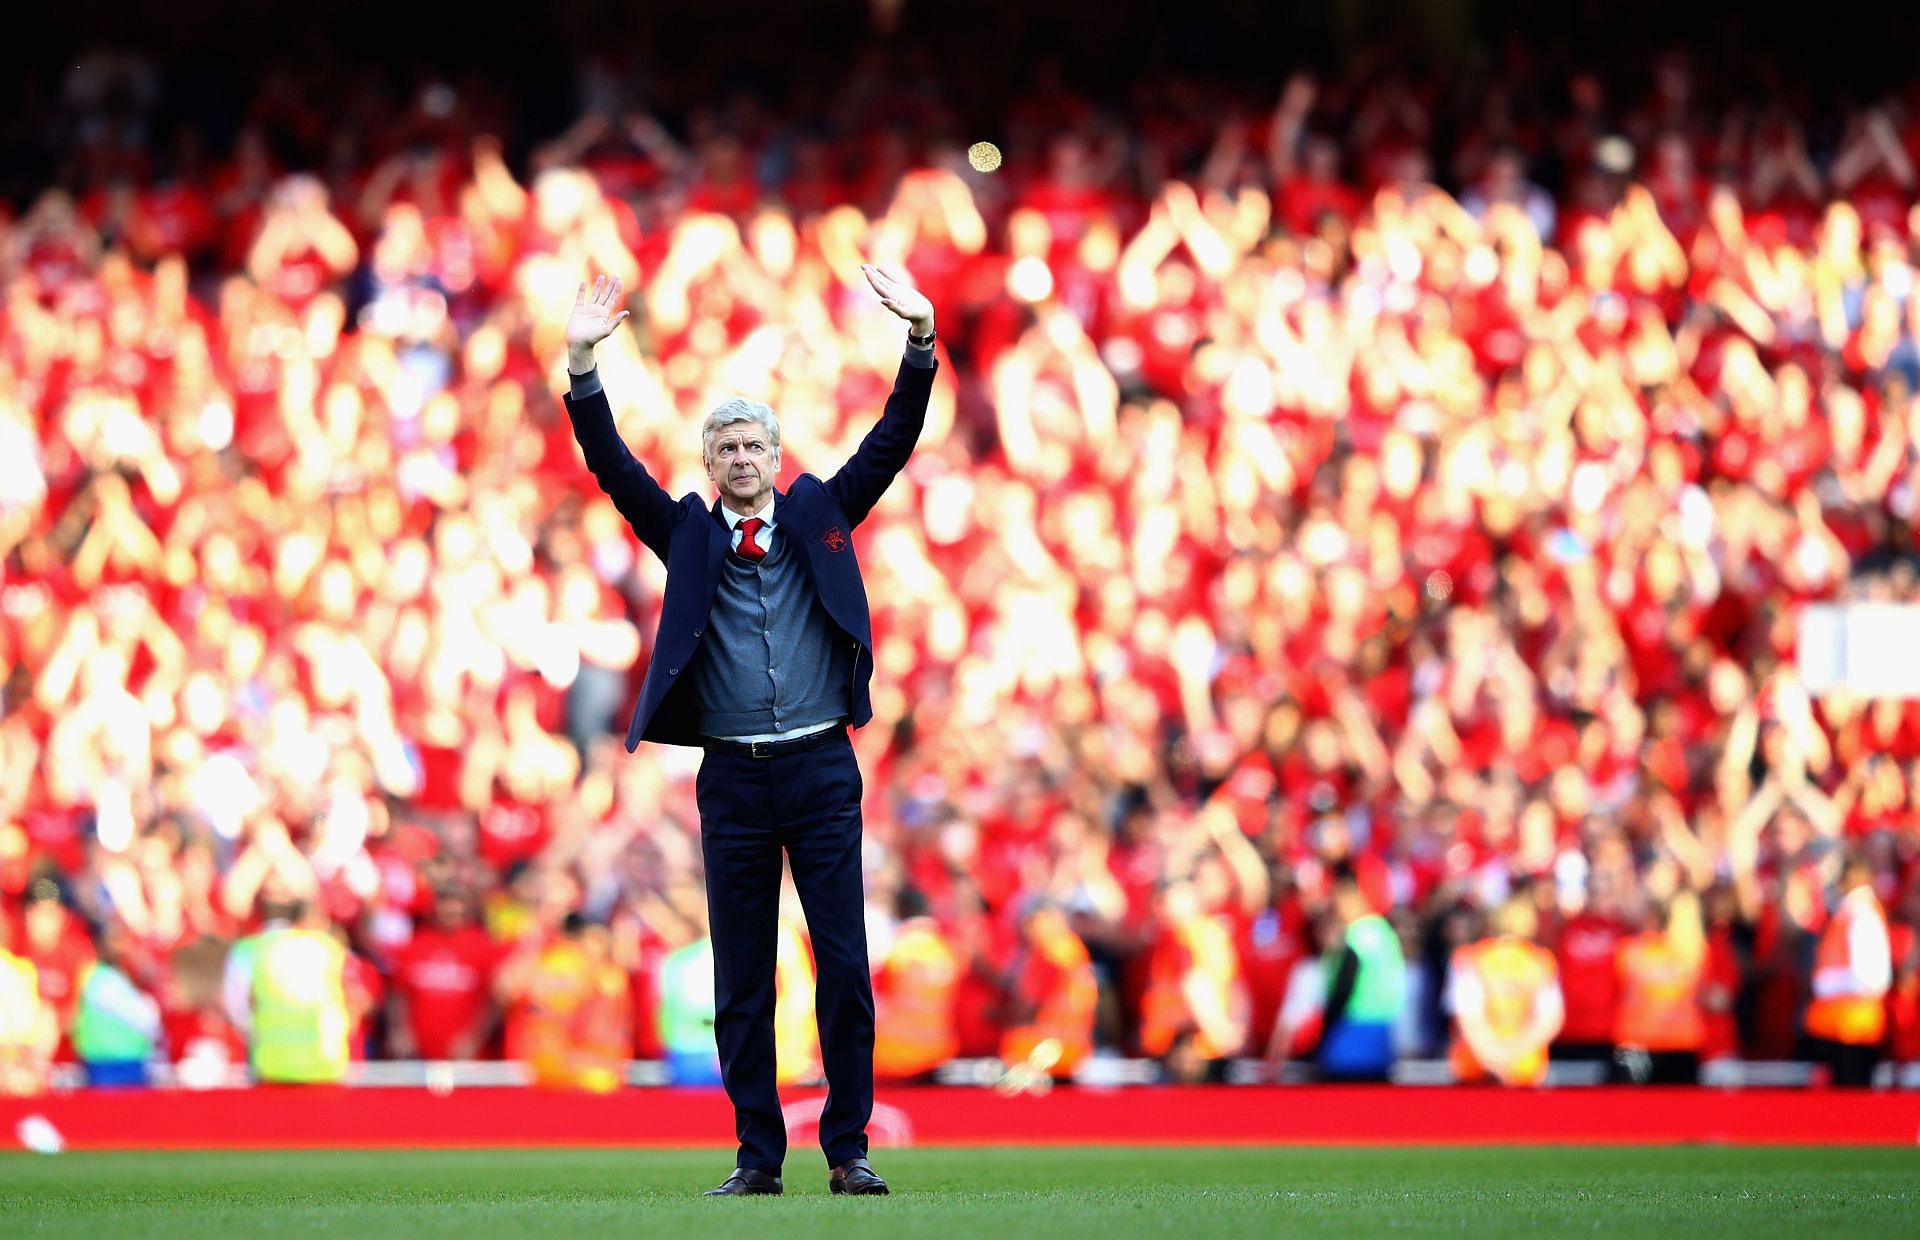 Arsenal legend Arsene Wenger